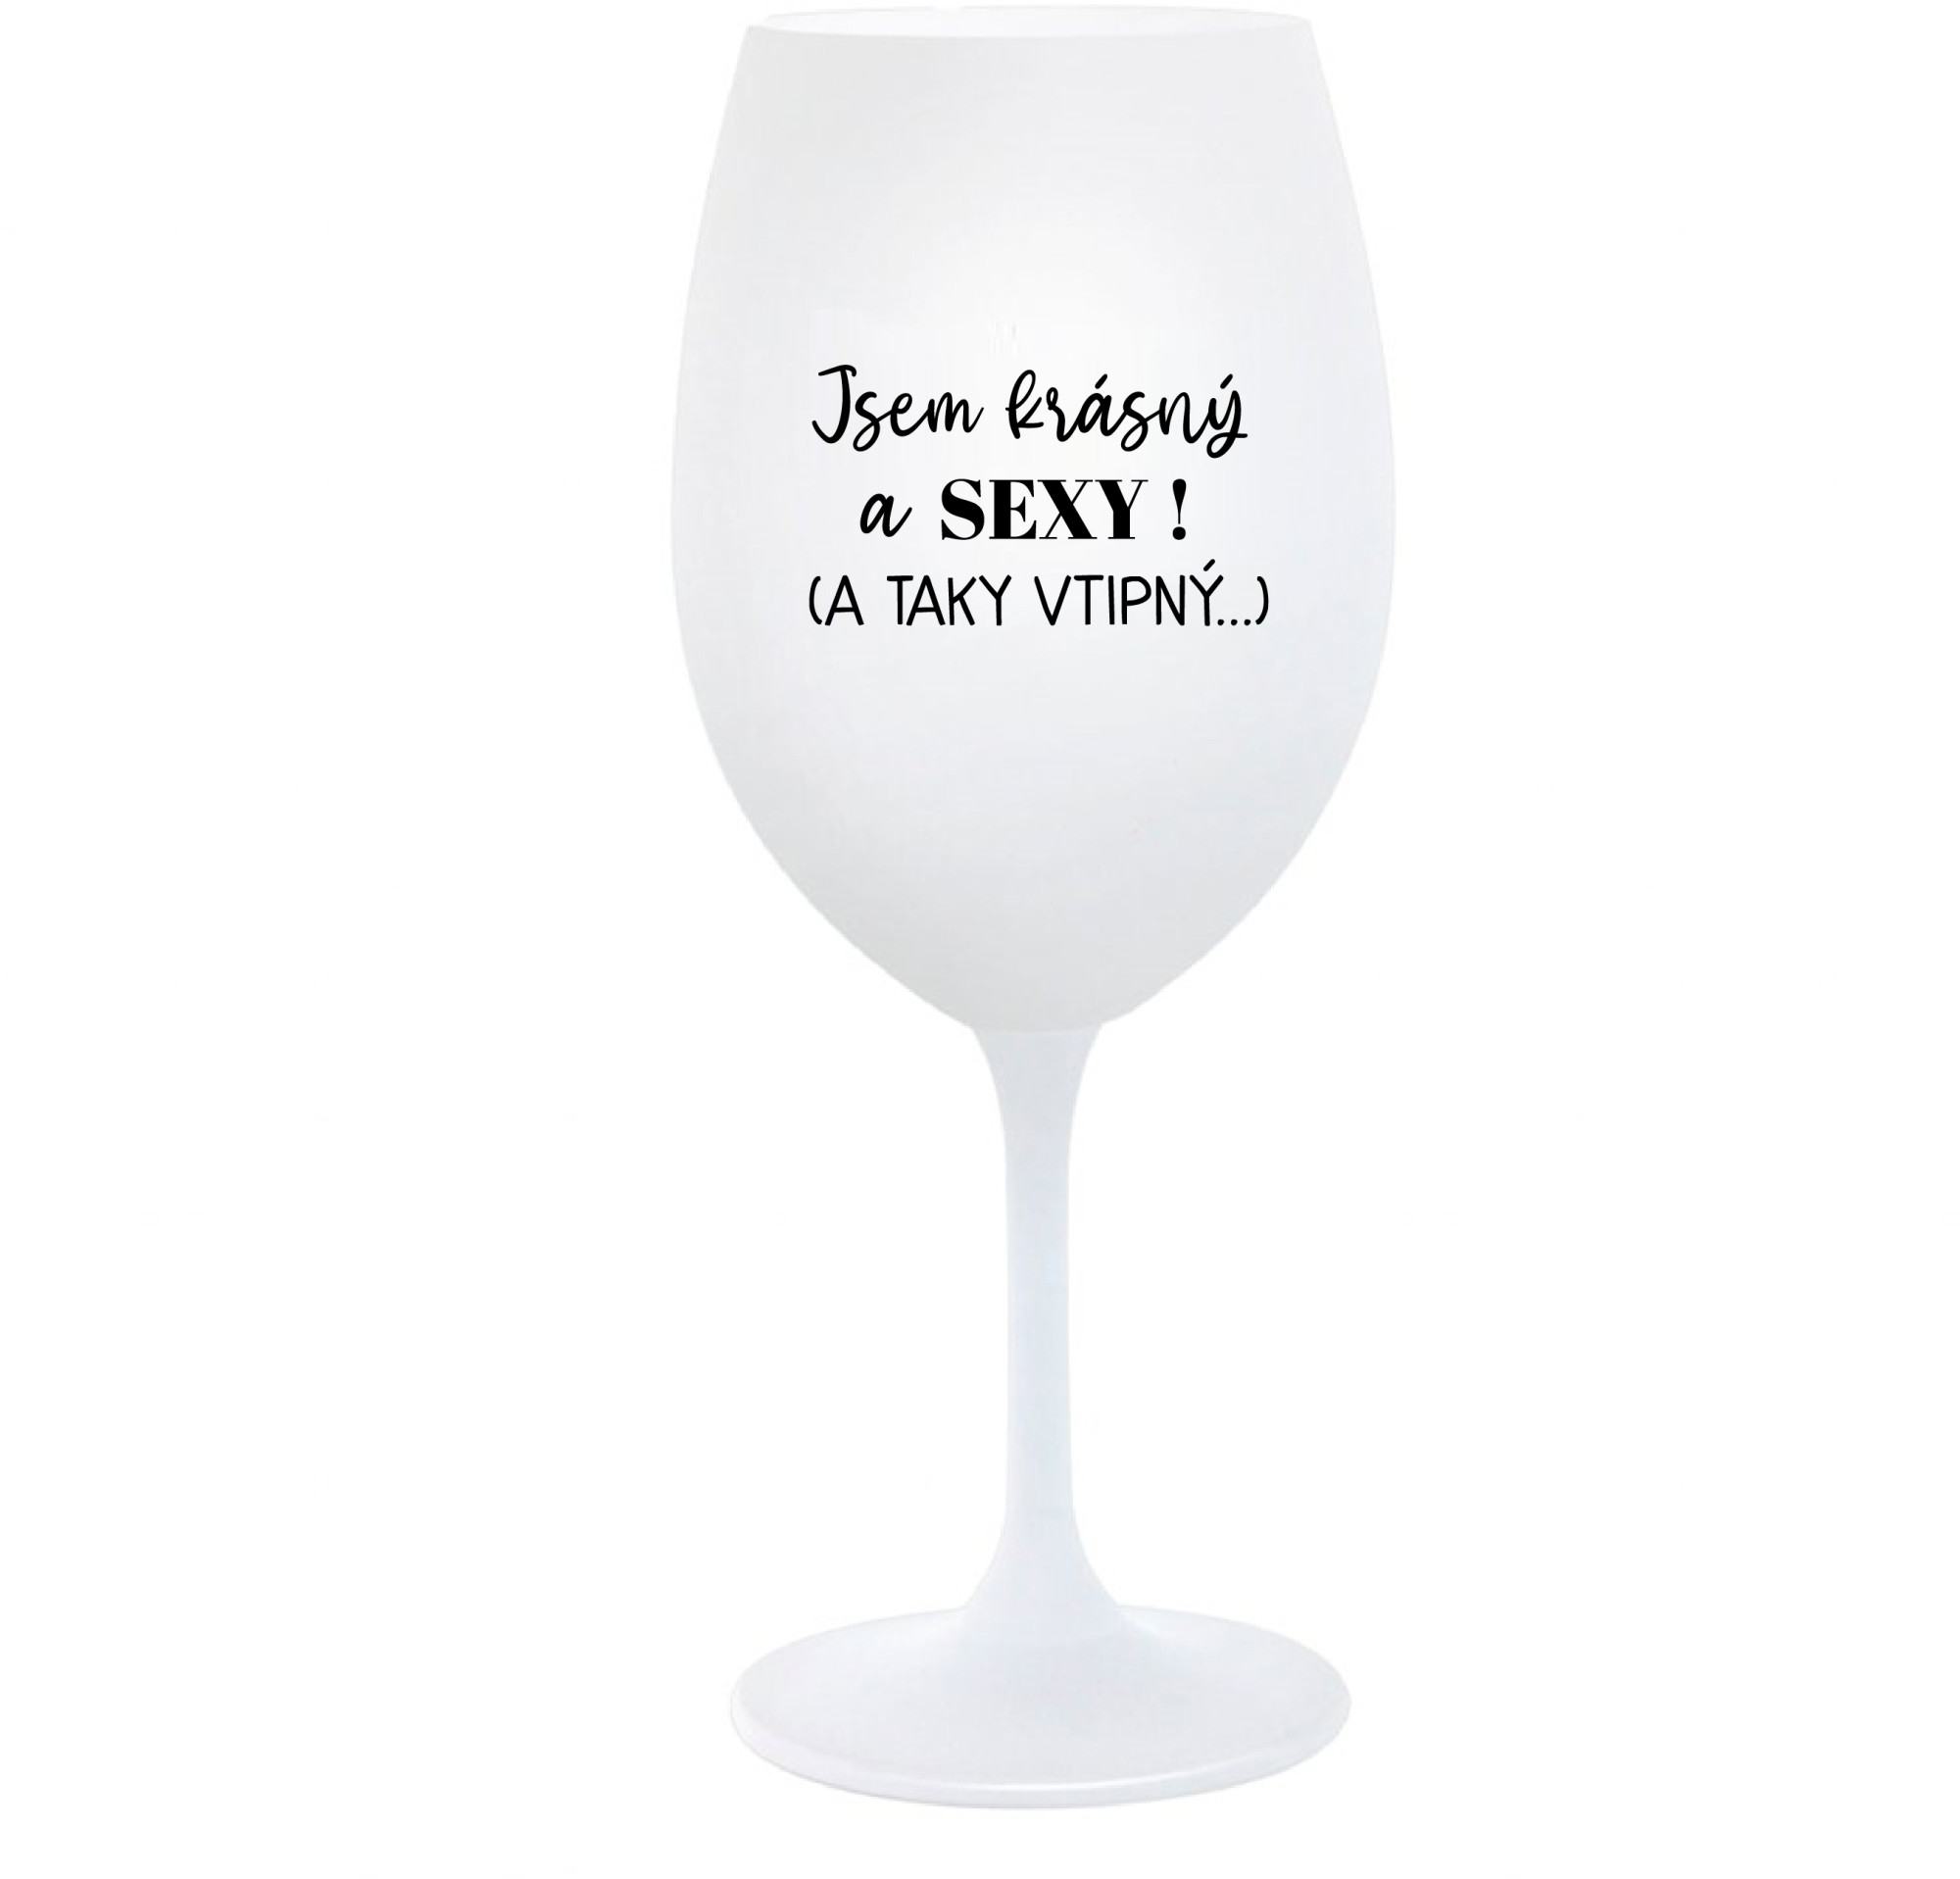 JSEM KRÁSNÝ A SEXY! (A TAKY VTIPNÝ...) - bílá sklenice na víno 350 ml